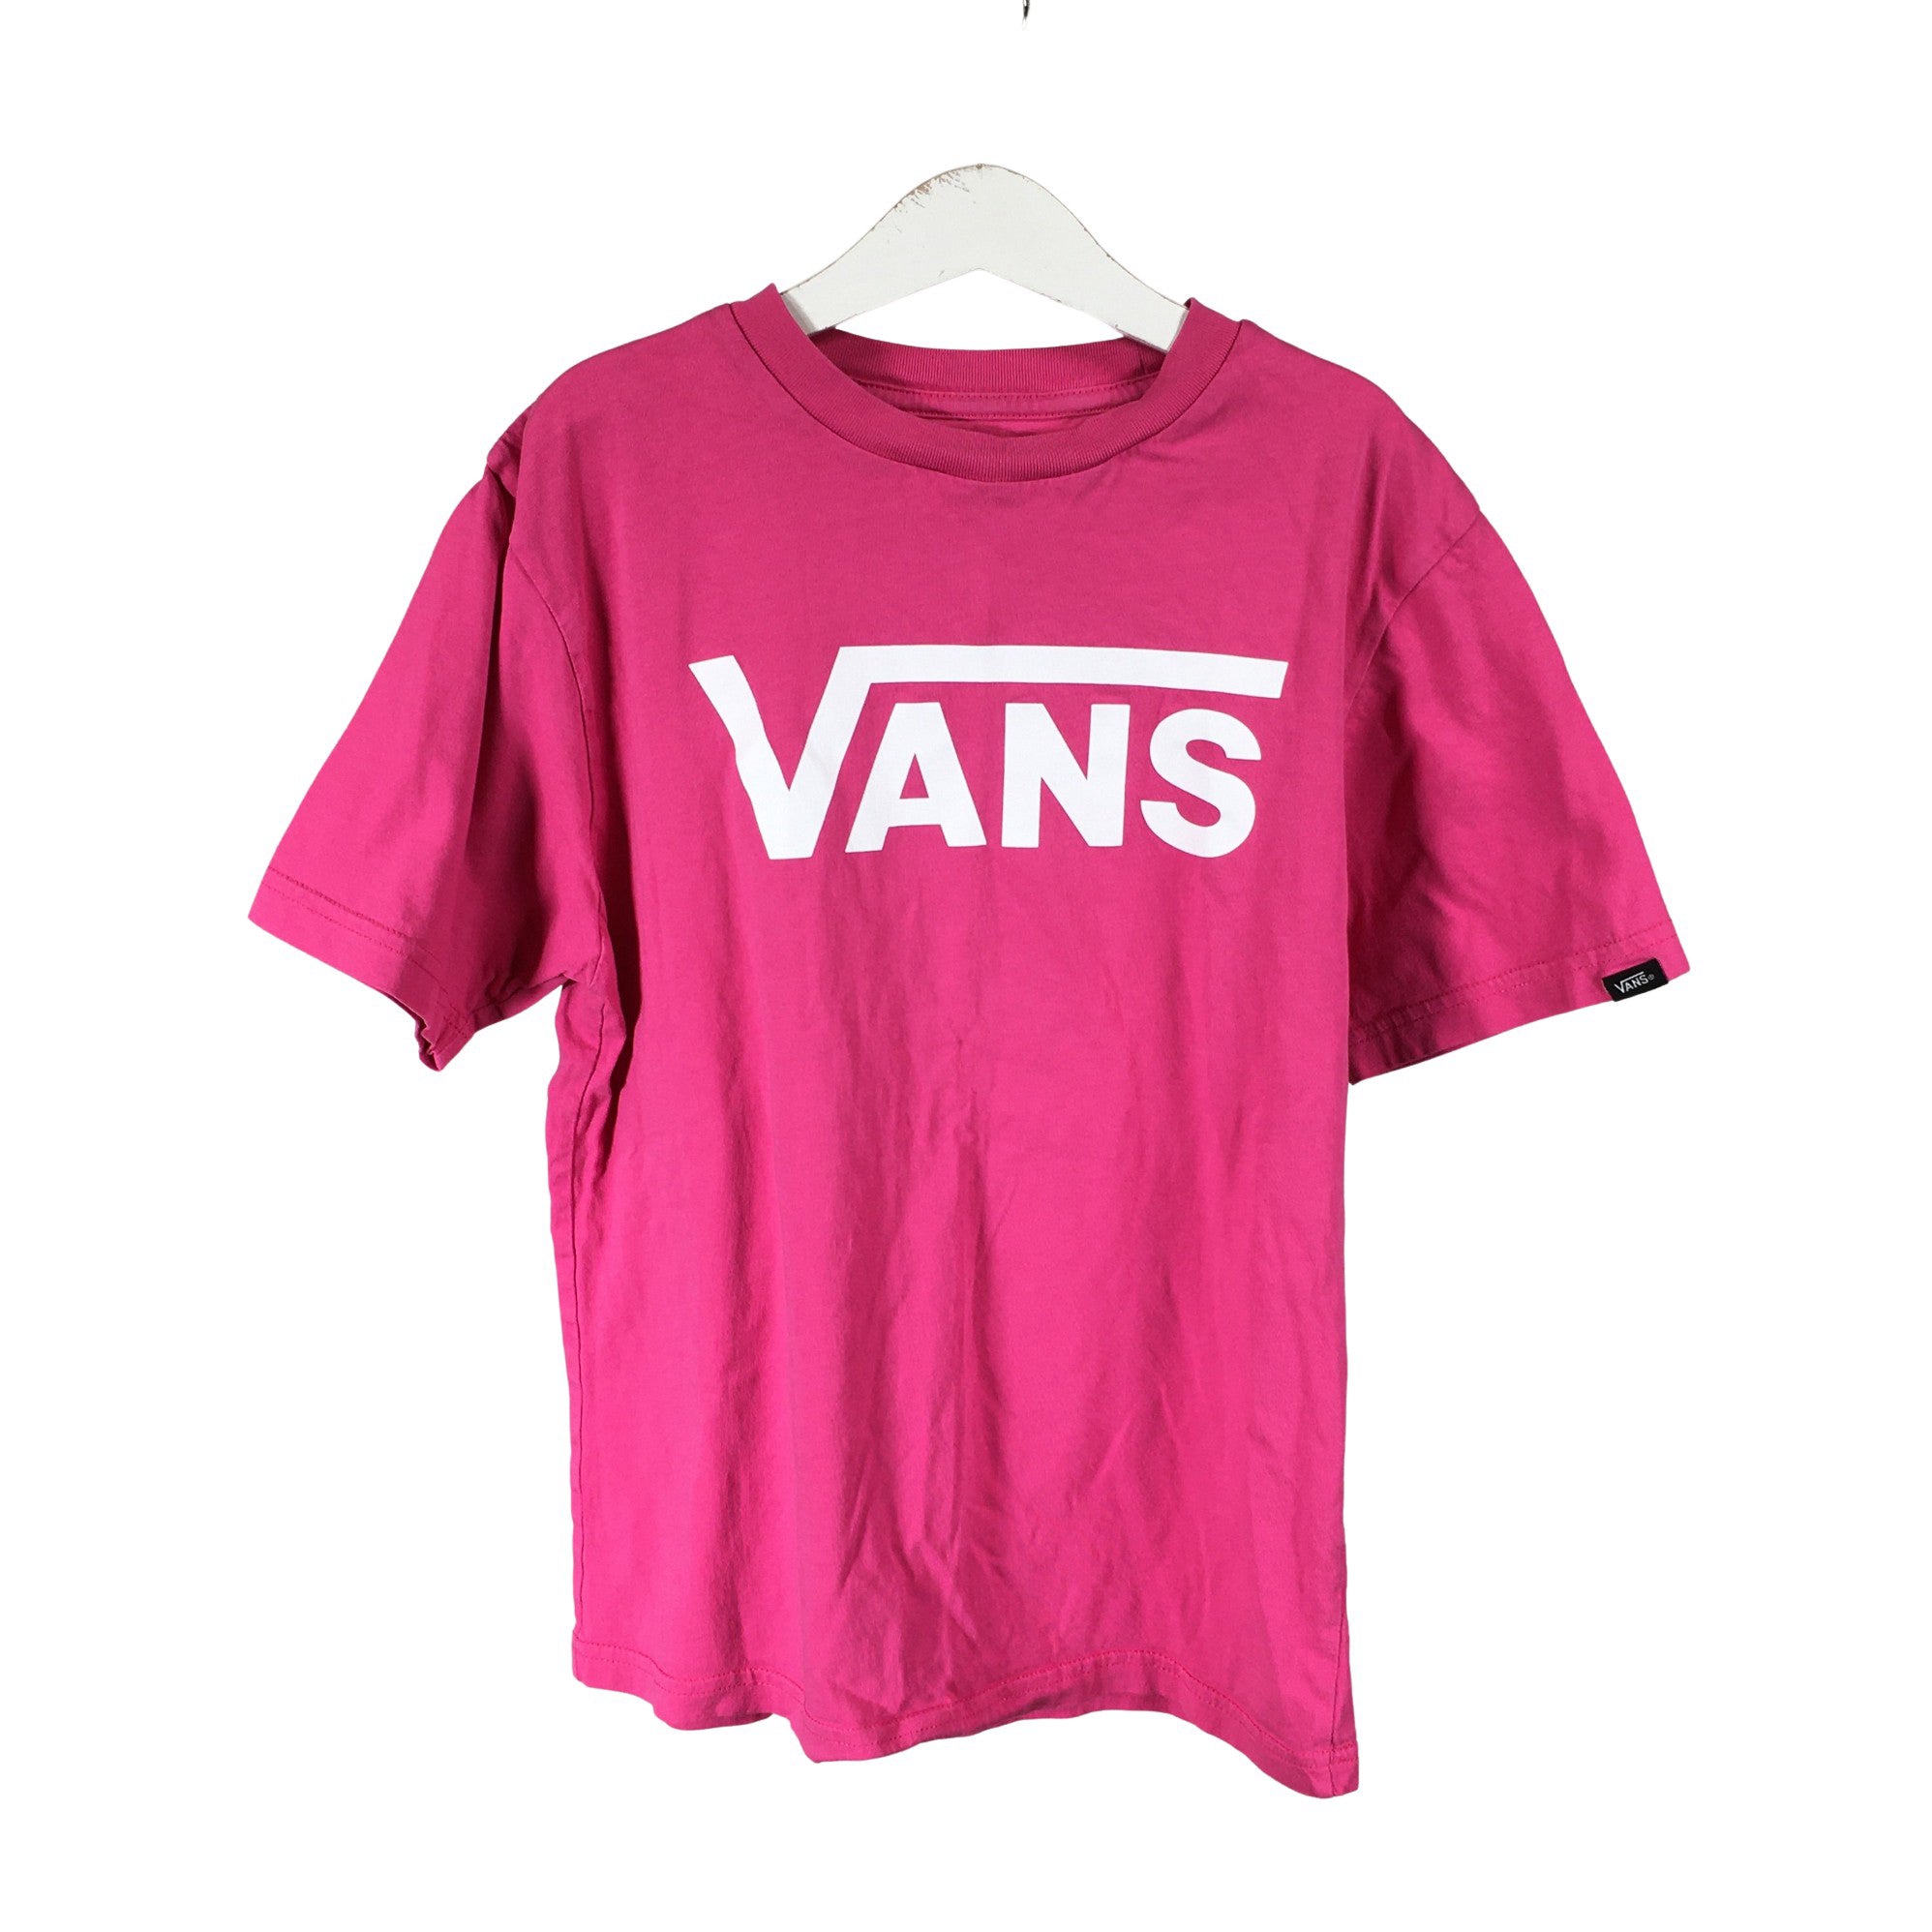 Girls' Vans T-shirt, 146 - 152 (Pink) Emmy